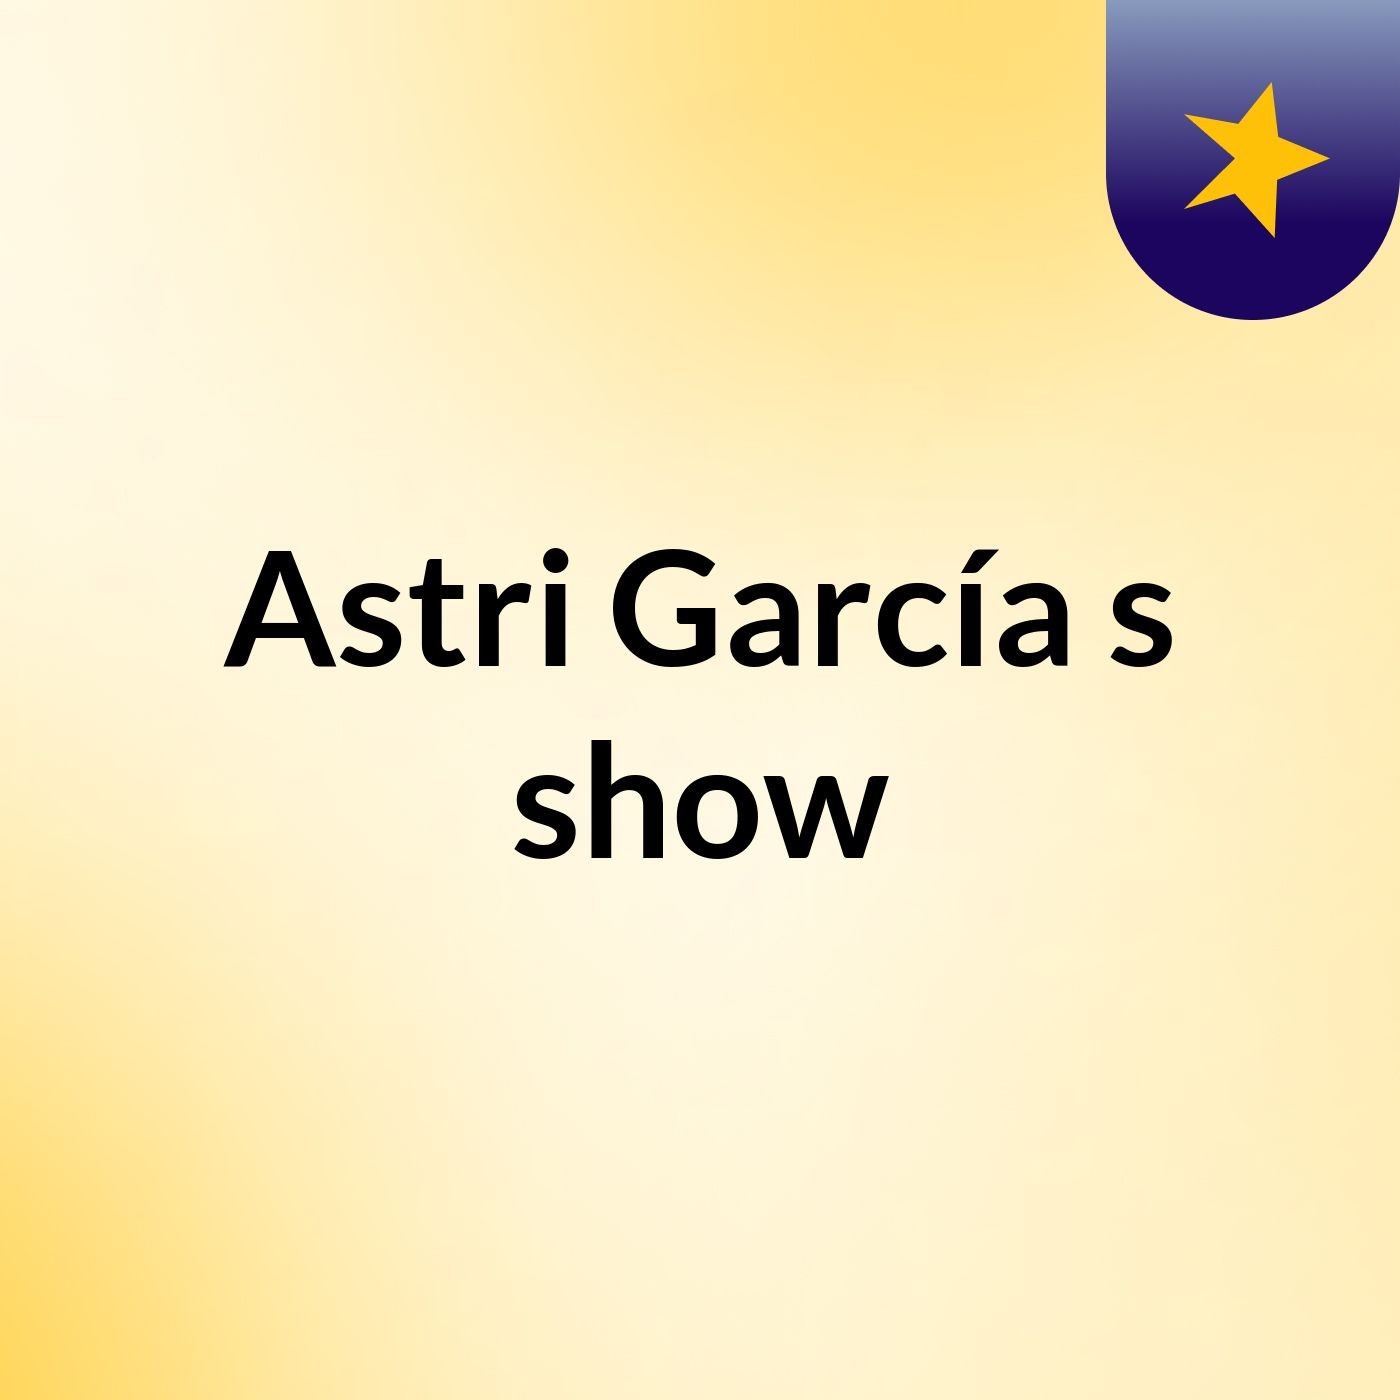 Astri García's show